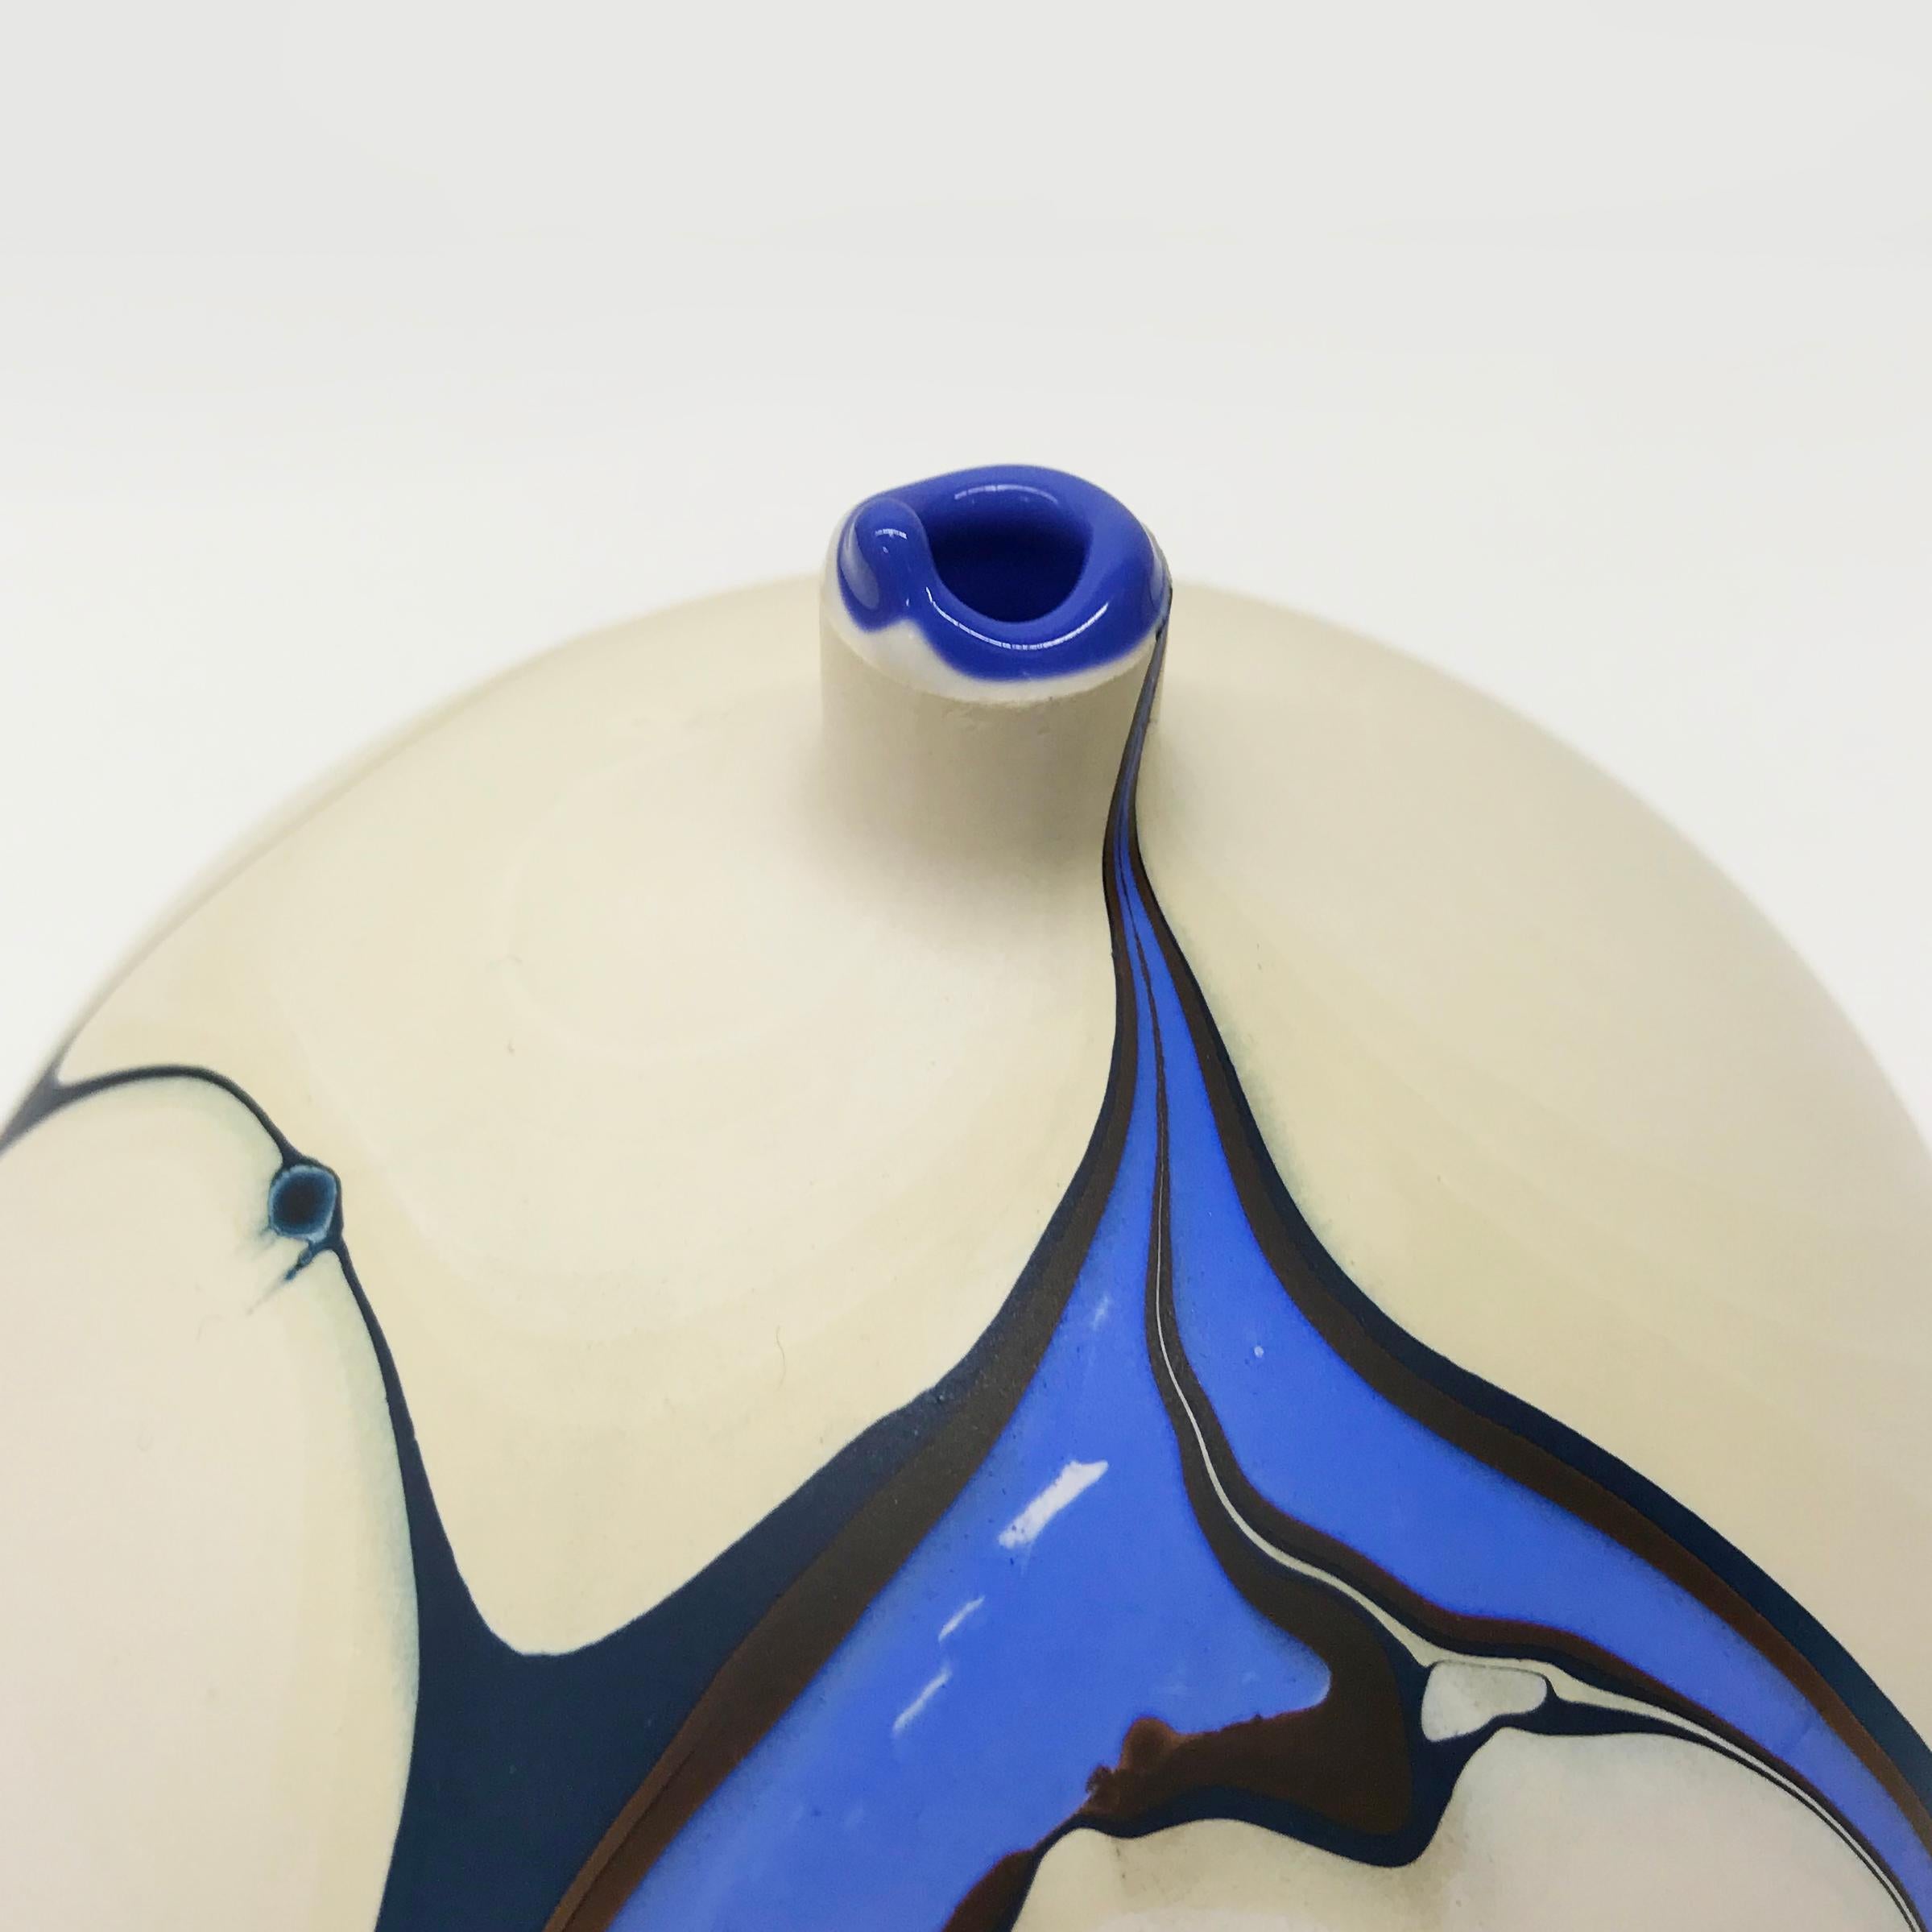 Unsere neuen marmorierten Vasen haben ein futuristisches Aussehen, da die charakteristische satte Maserung über einen neuen gedämpften Hintergrund verläuft. Mit dieser neuen Palette begannen wir, uns die Möglichkeit jenseitiger Landschaften und